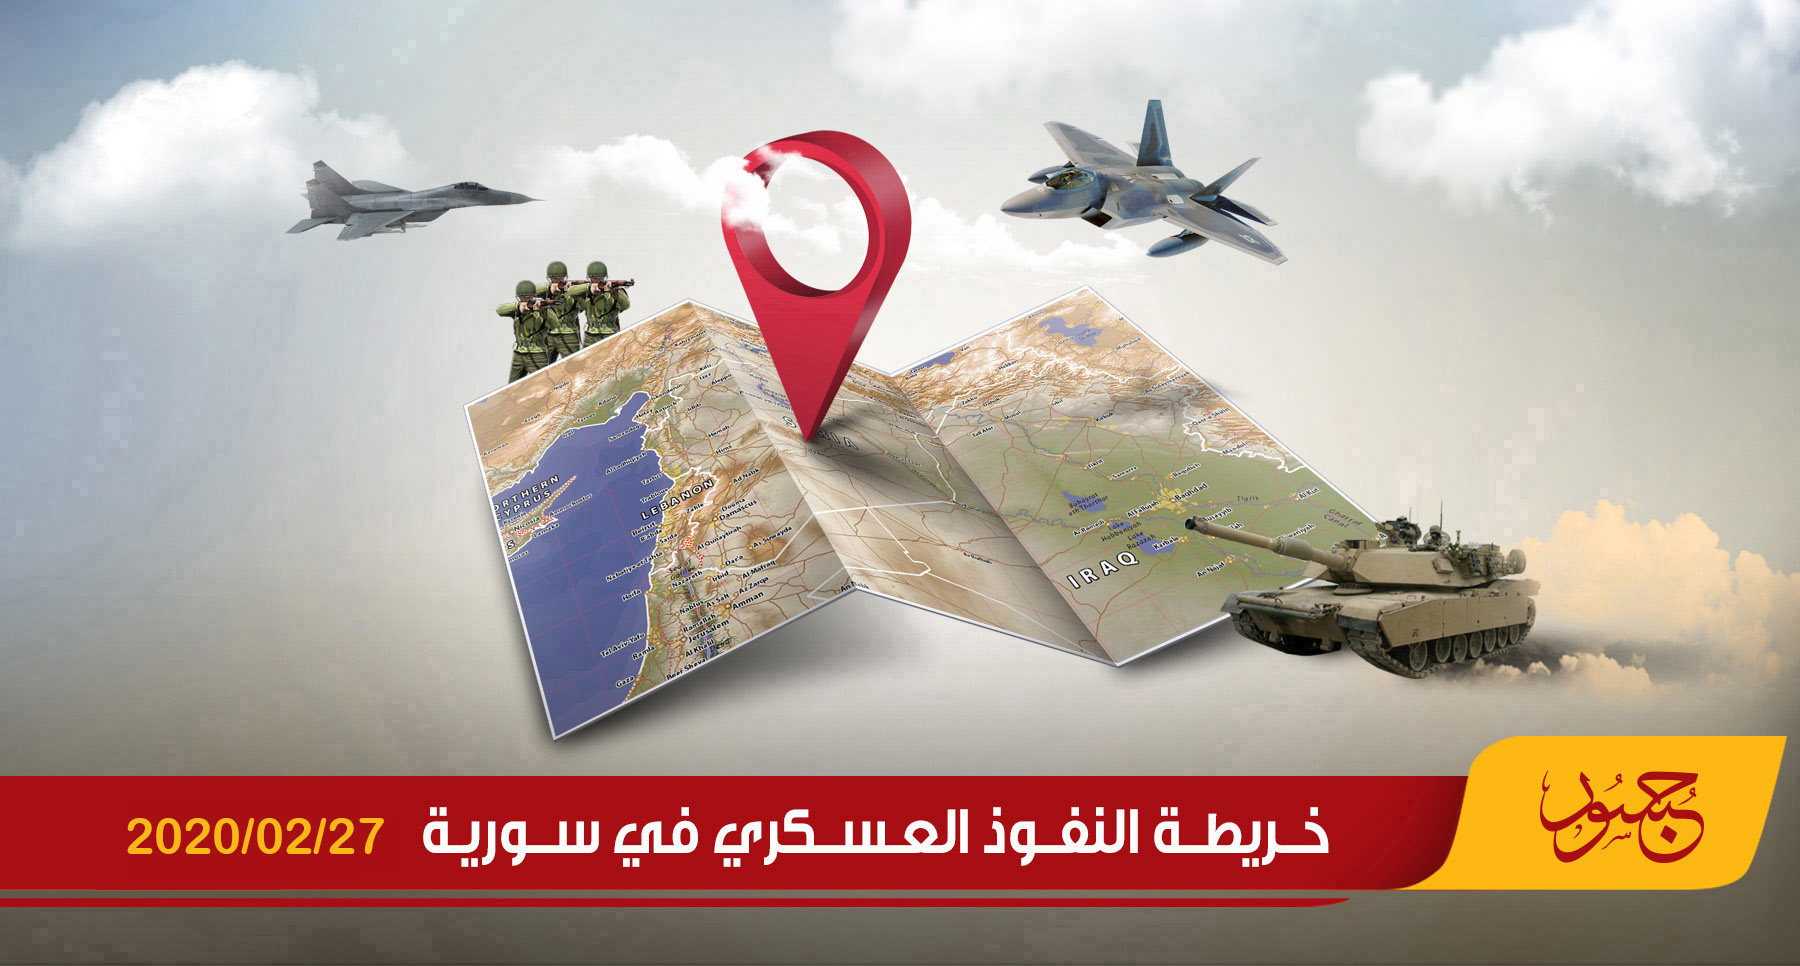 خريطة النفوذ العسكري في سورية 27-02-2020